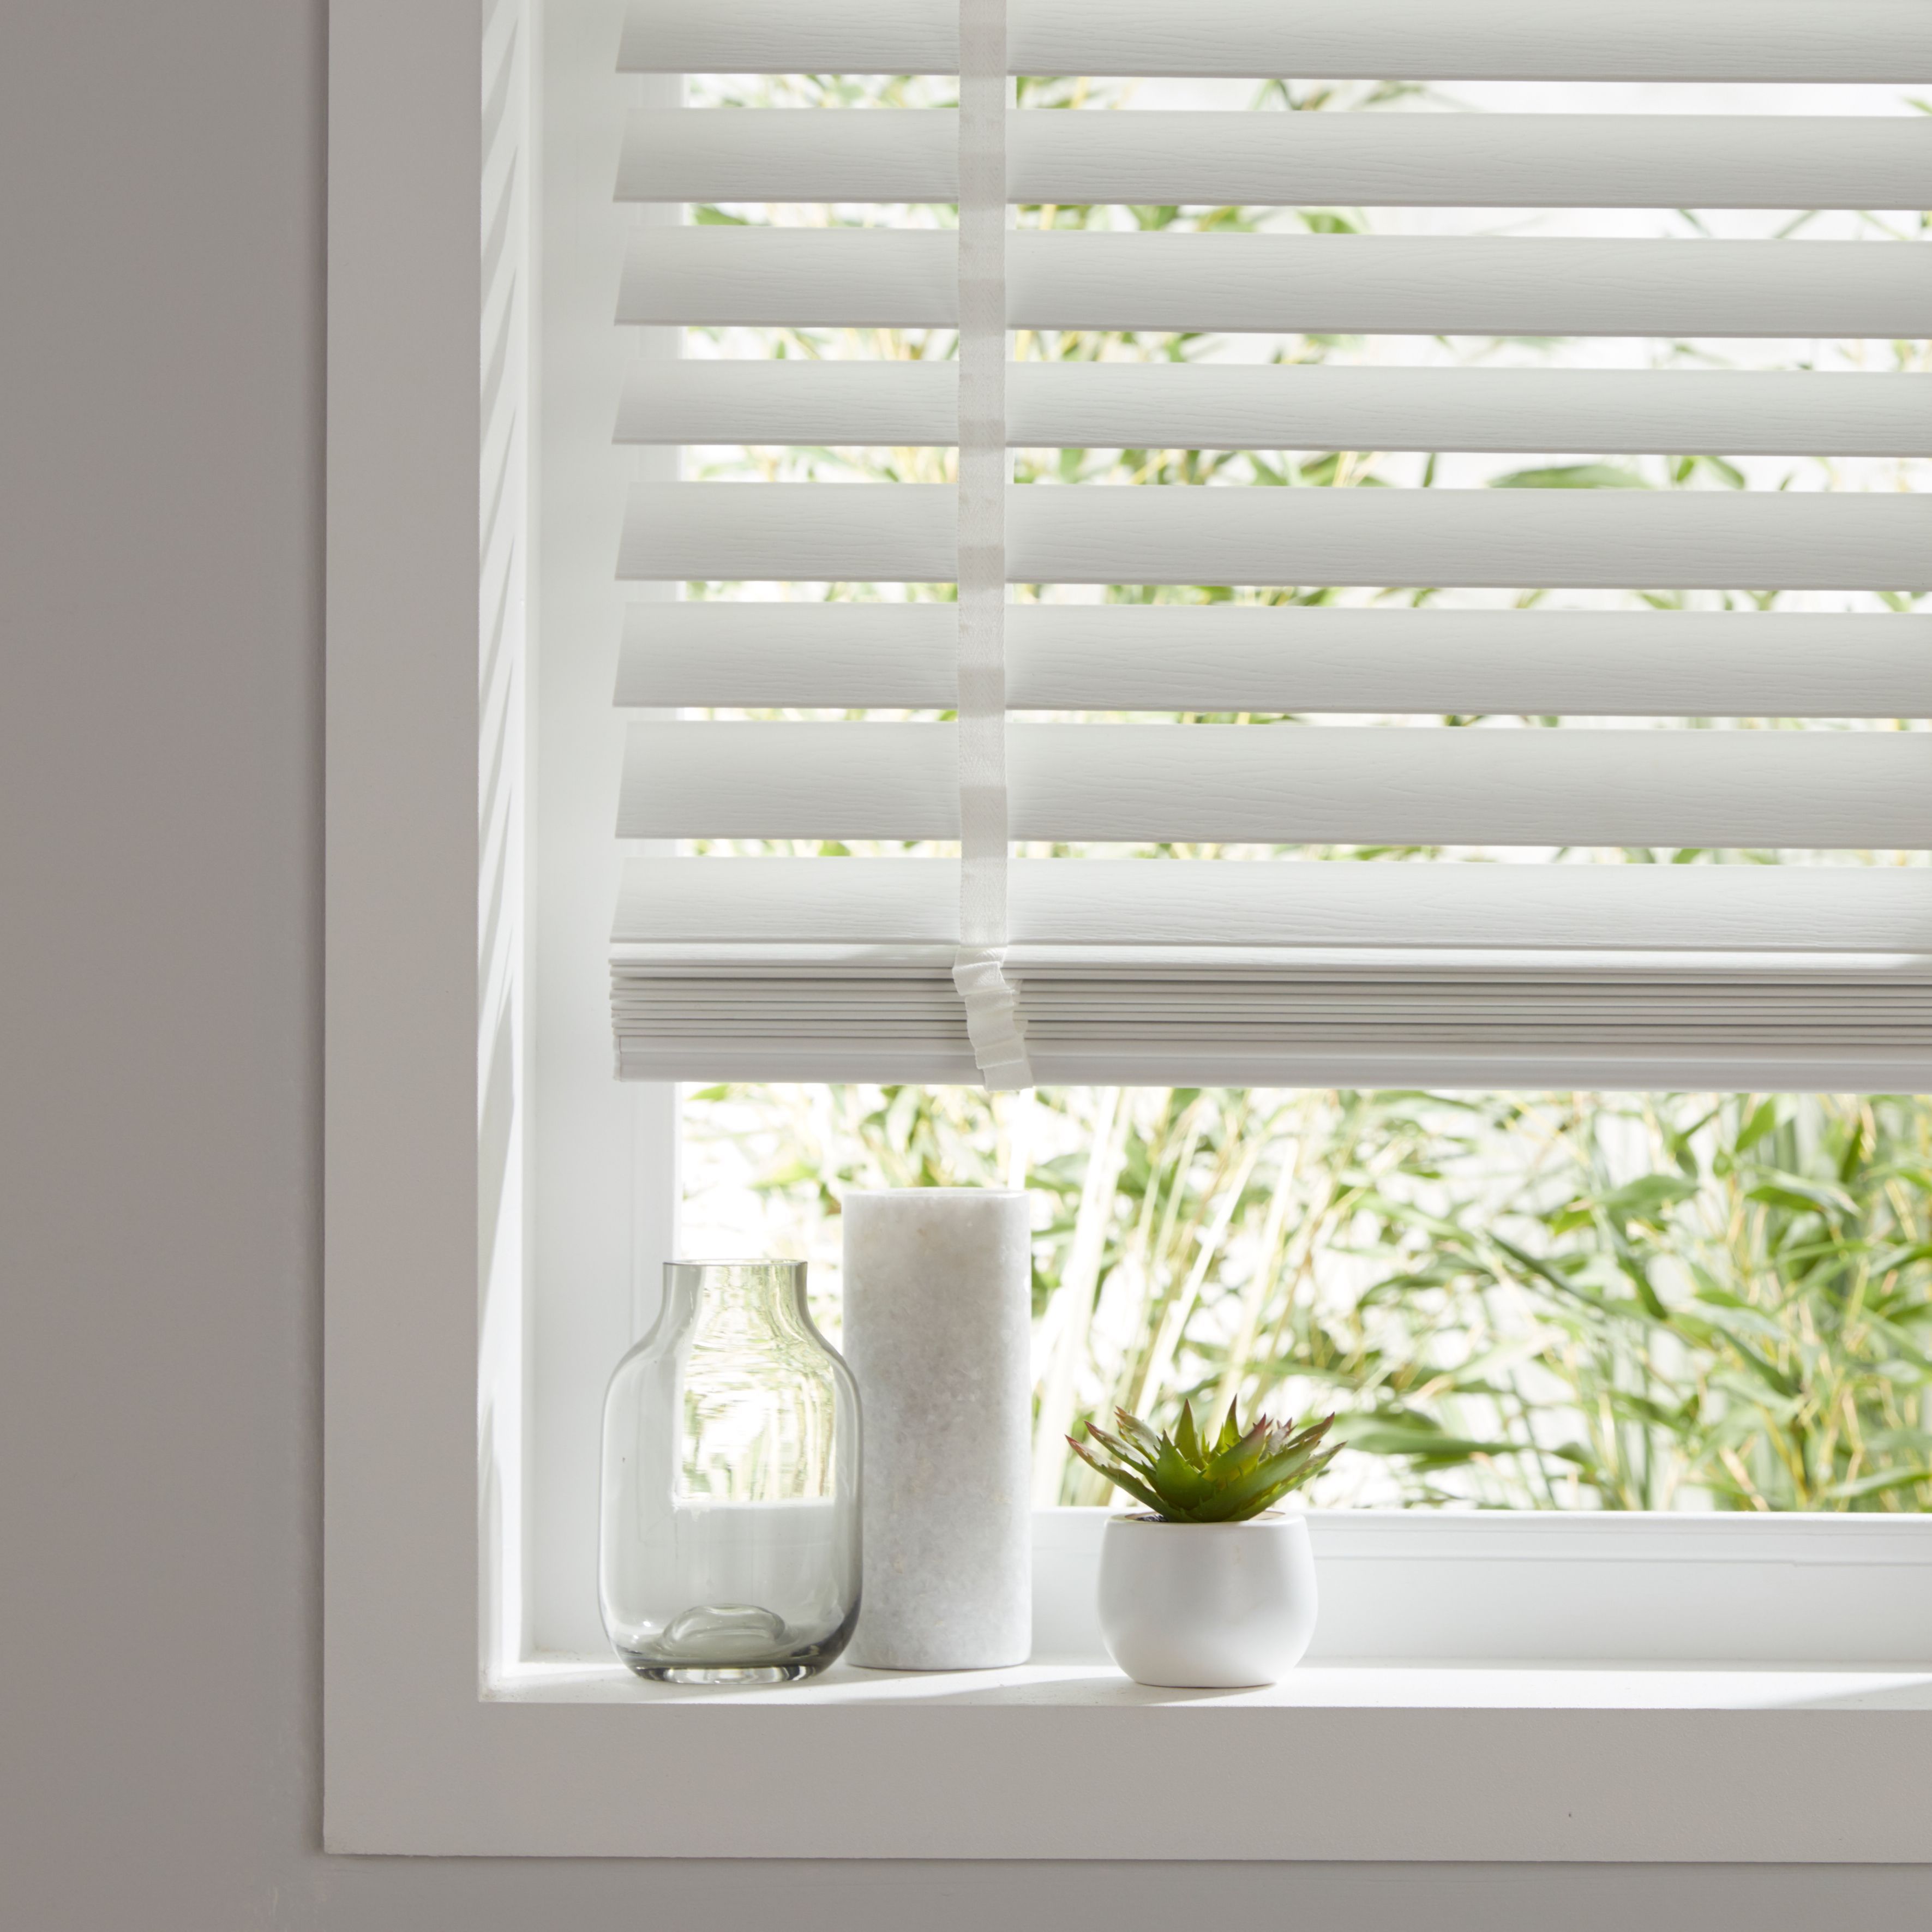 EASY FIT WHITE PVC VENETIAN WINDOW BLINDS LONG /& STANDARD DROPS BEDROOM KITCHEN